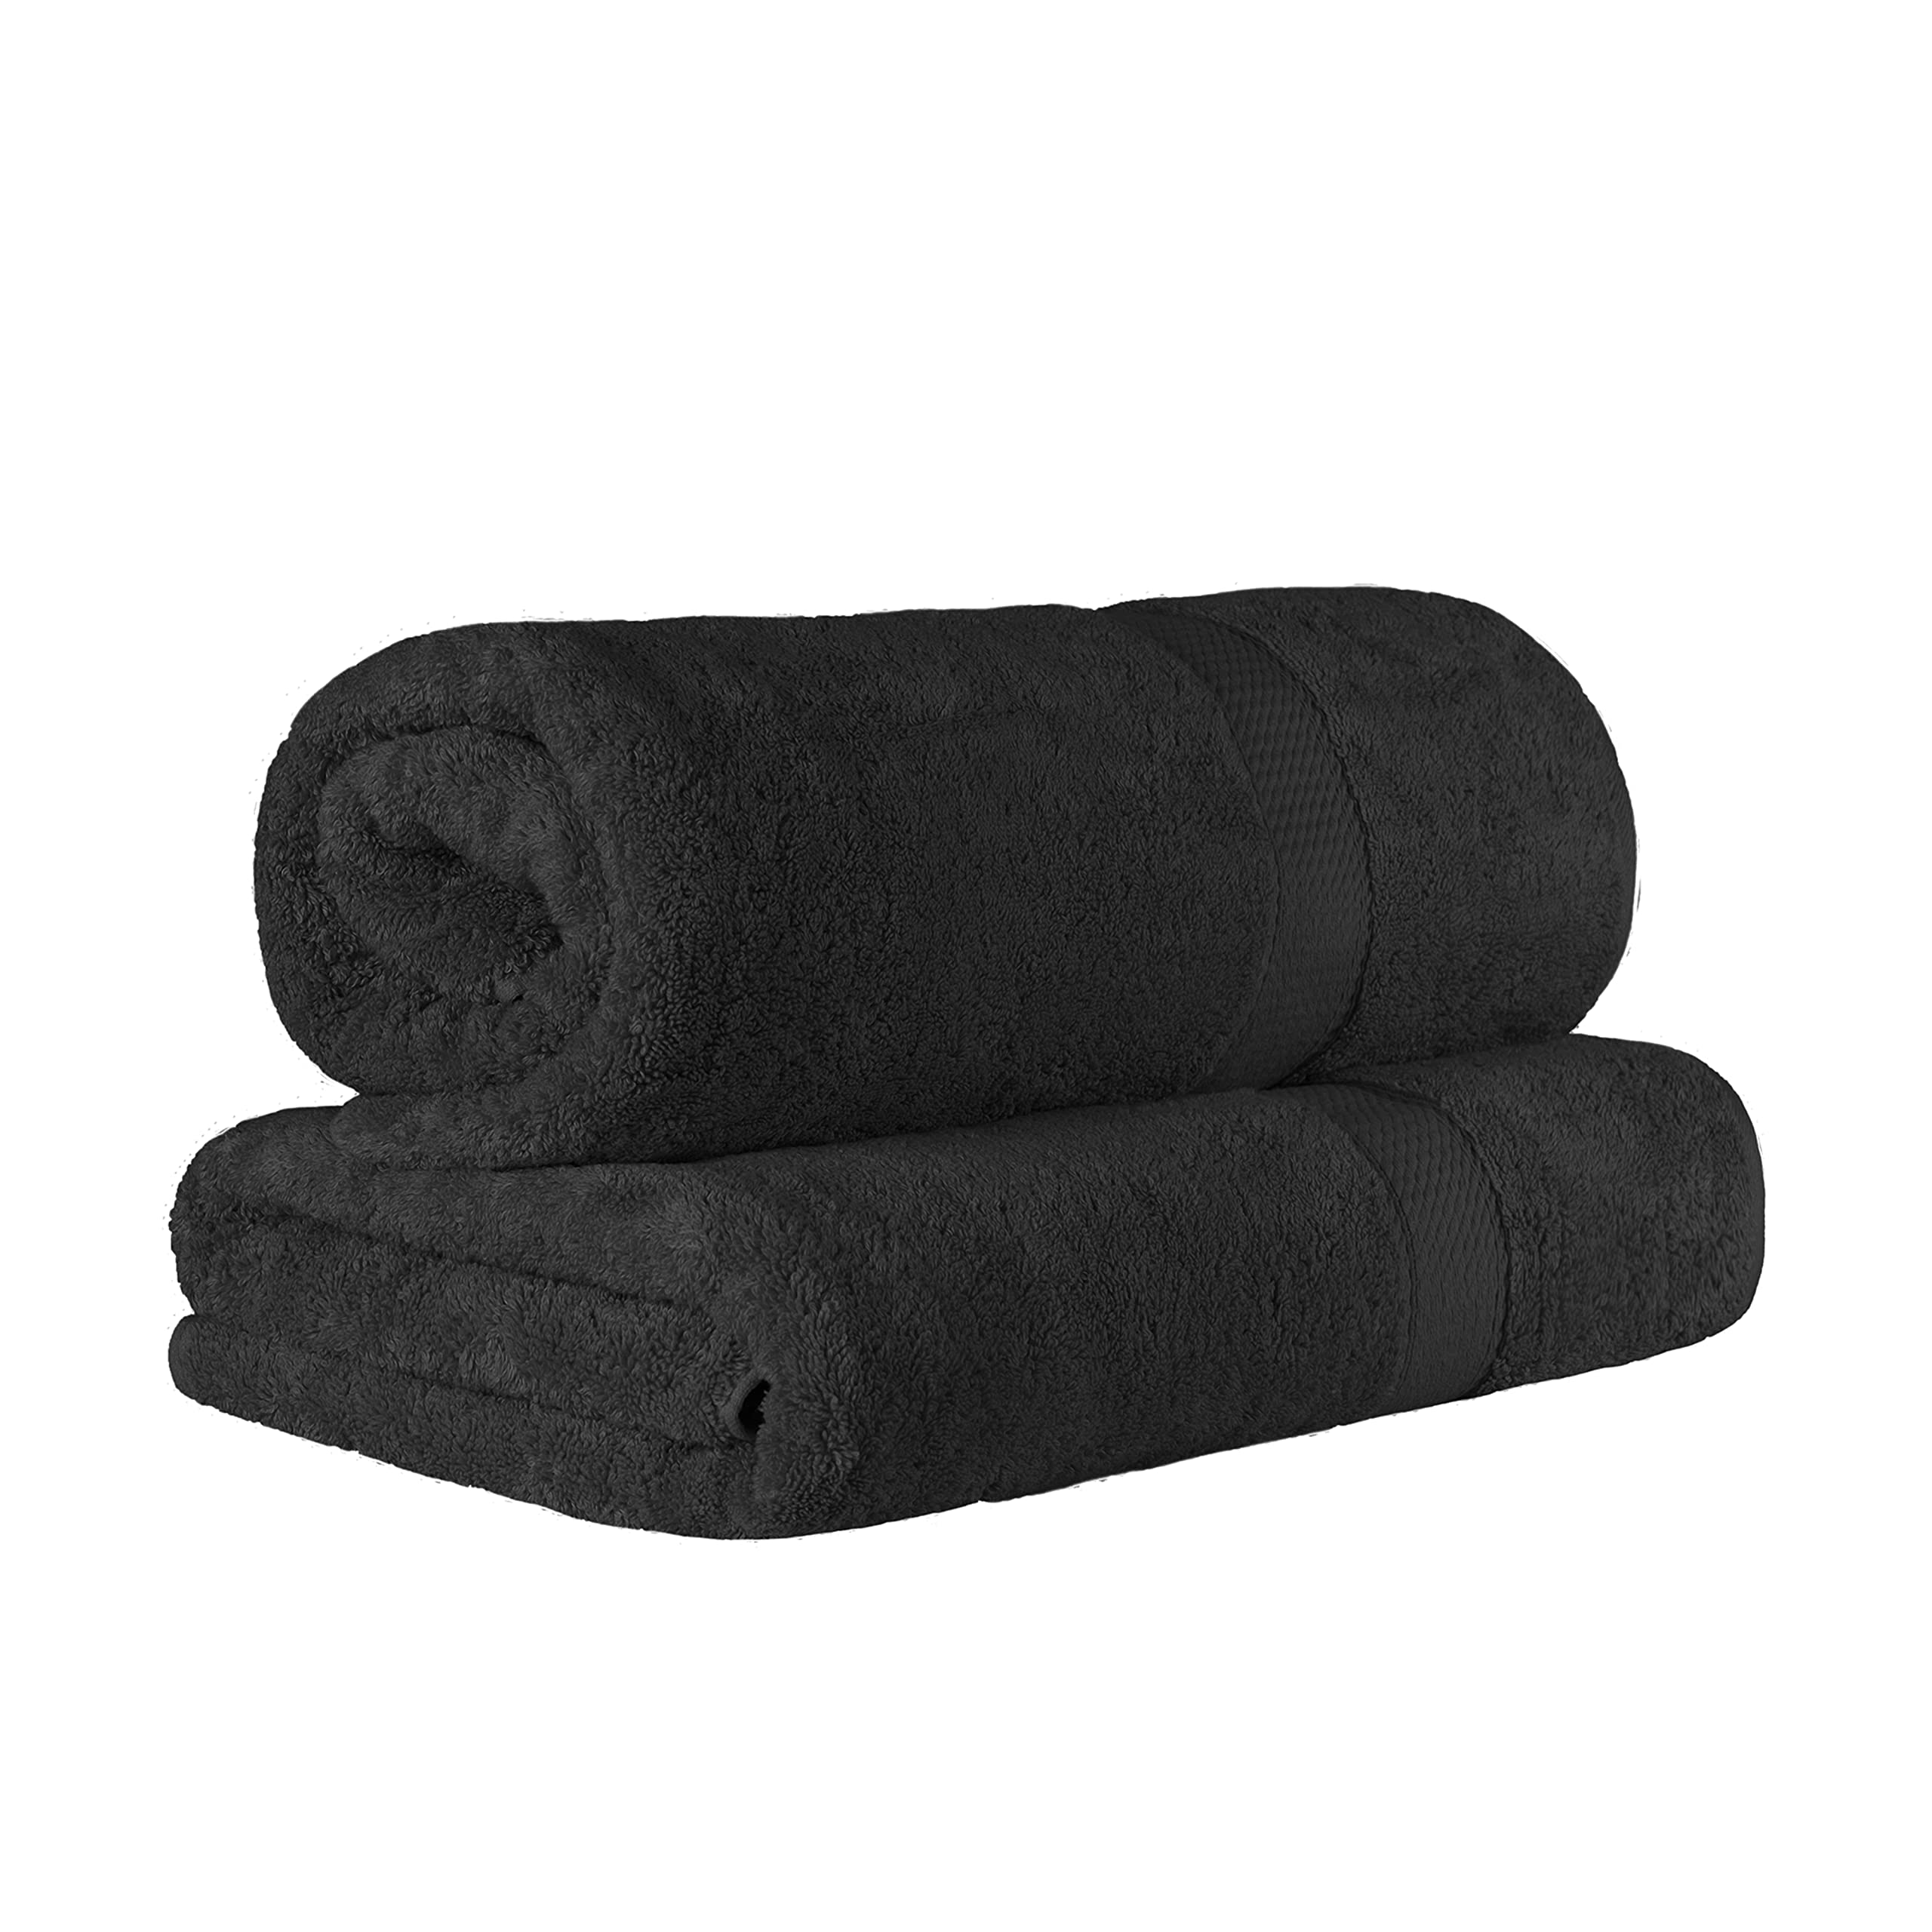 SUPERIOR 埃及棉 2 件套纯色浴巾套装，浴巾 34 x 68，800 GSM，2 件套，黑色...